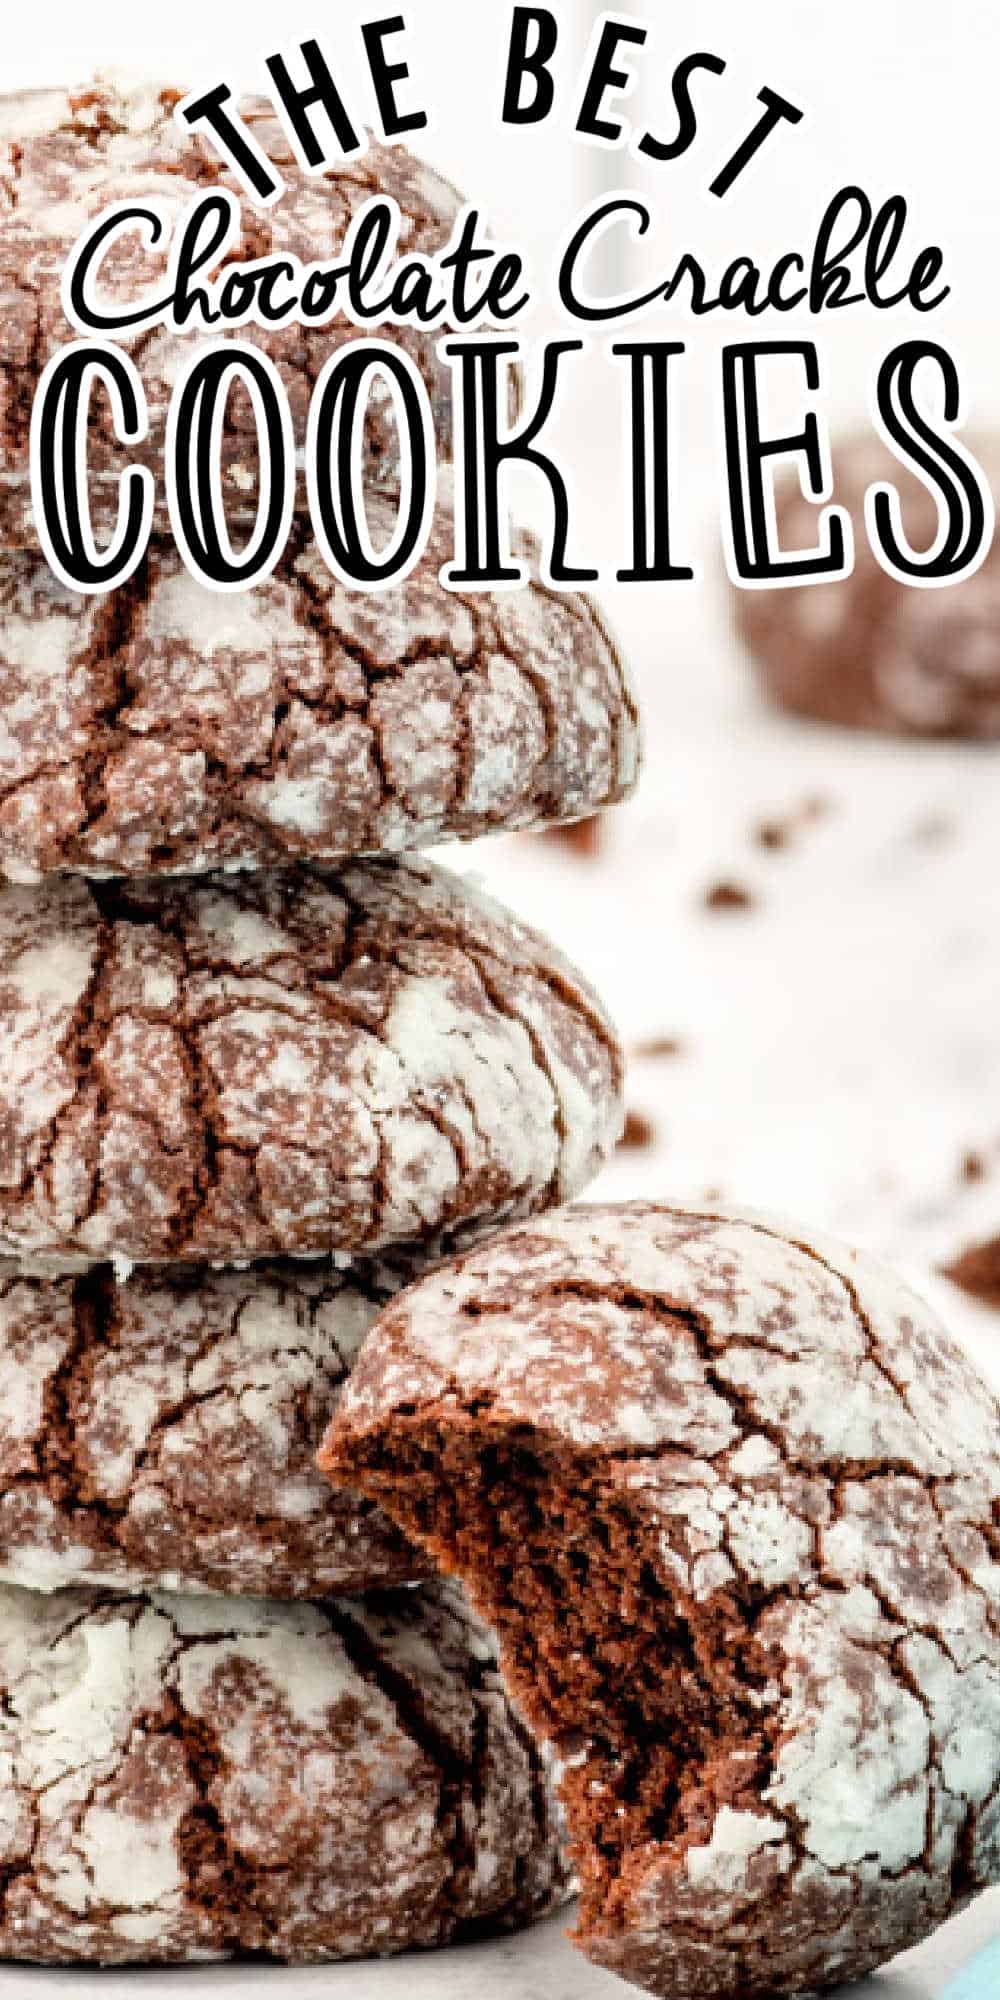 Chocolate Crinkle Cookies Recipe (Chocolate Crackle Cookies)